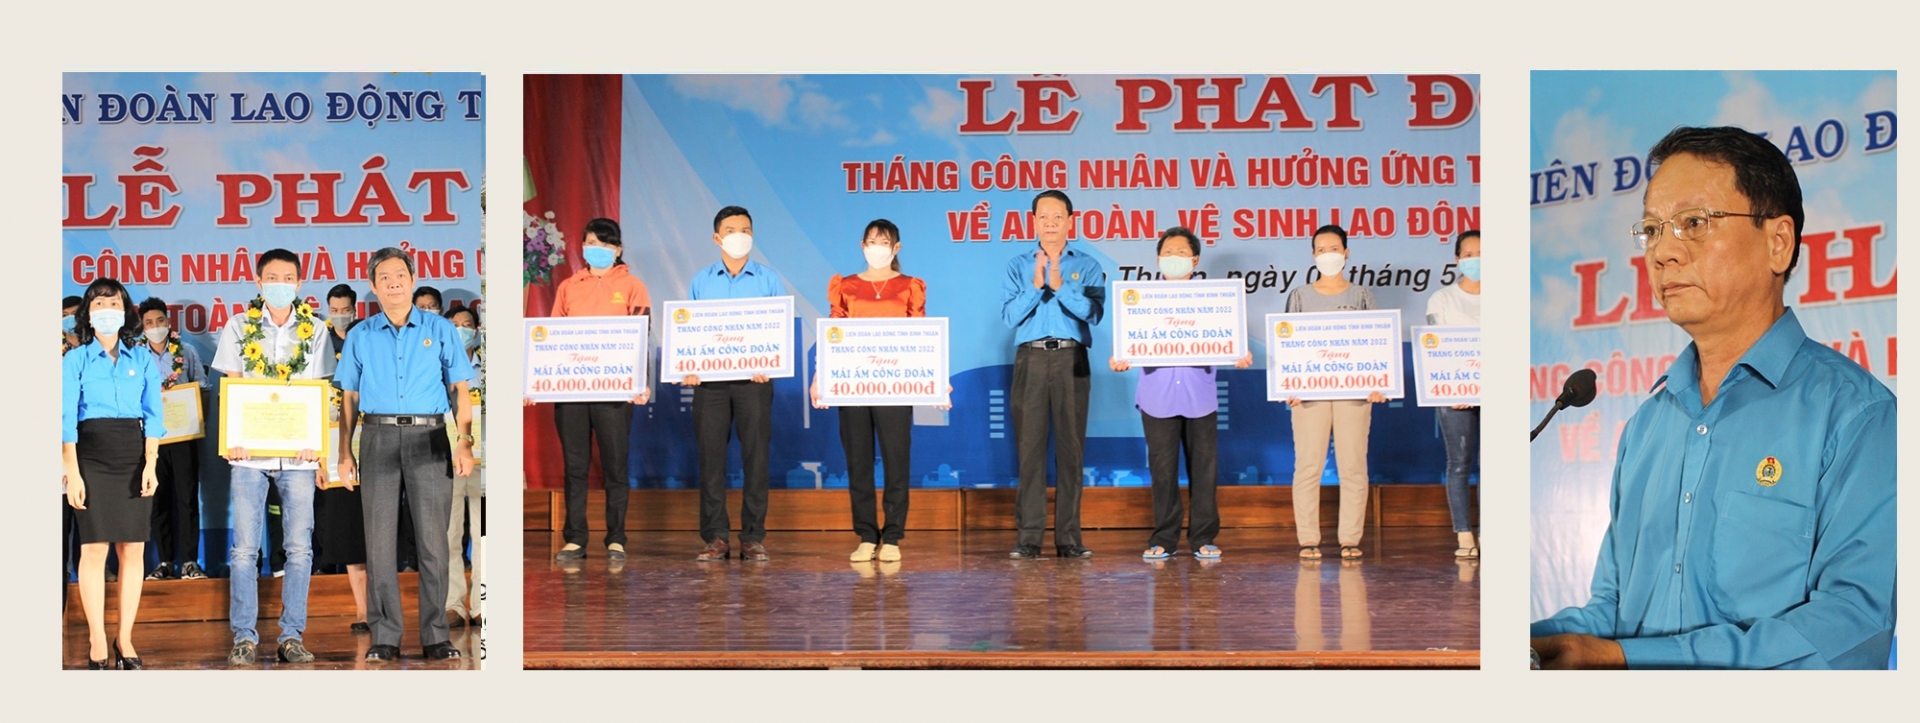 LĐLĐ tỉnh Bình Thuận: Gắn kết hơn với đoàn viên, NLĐ trong Tháng Công nhân